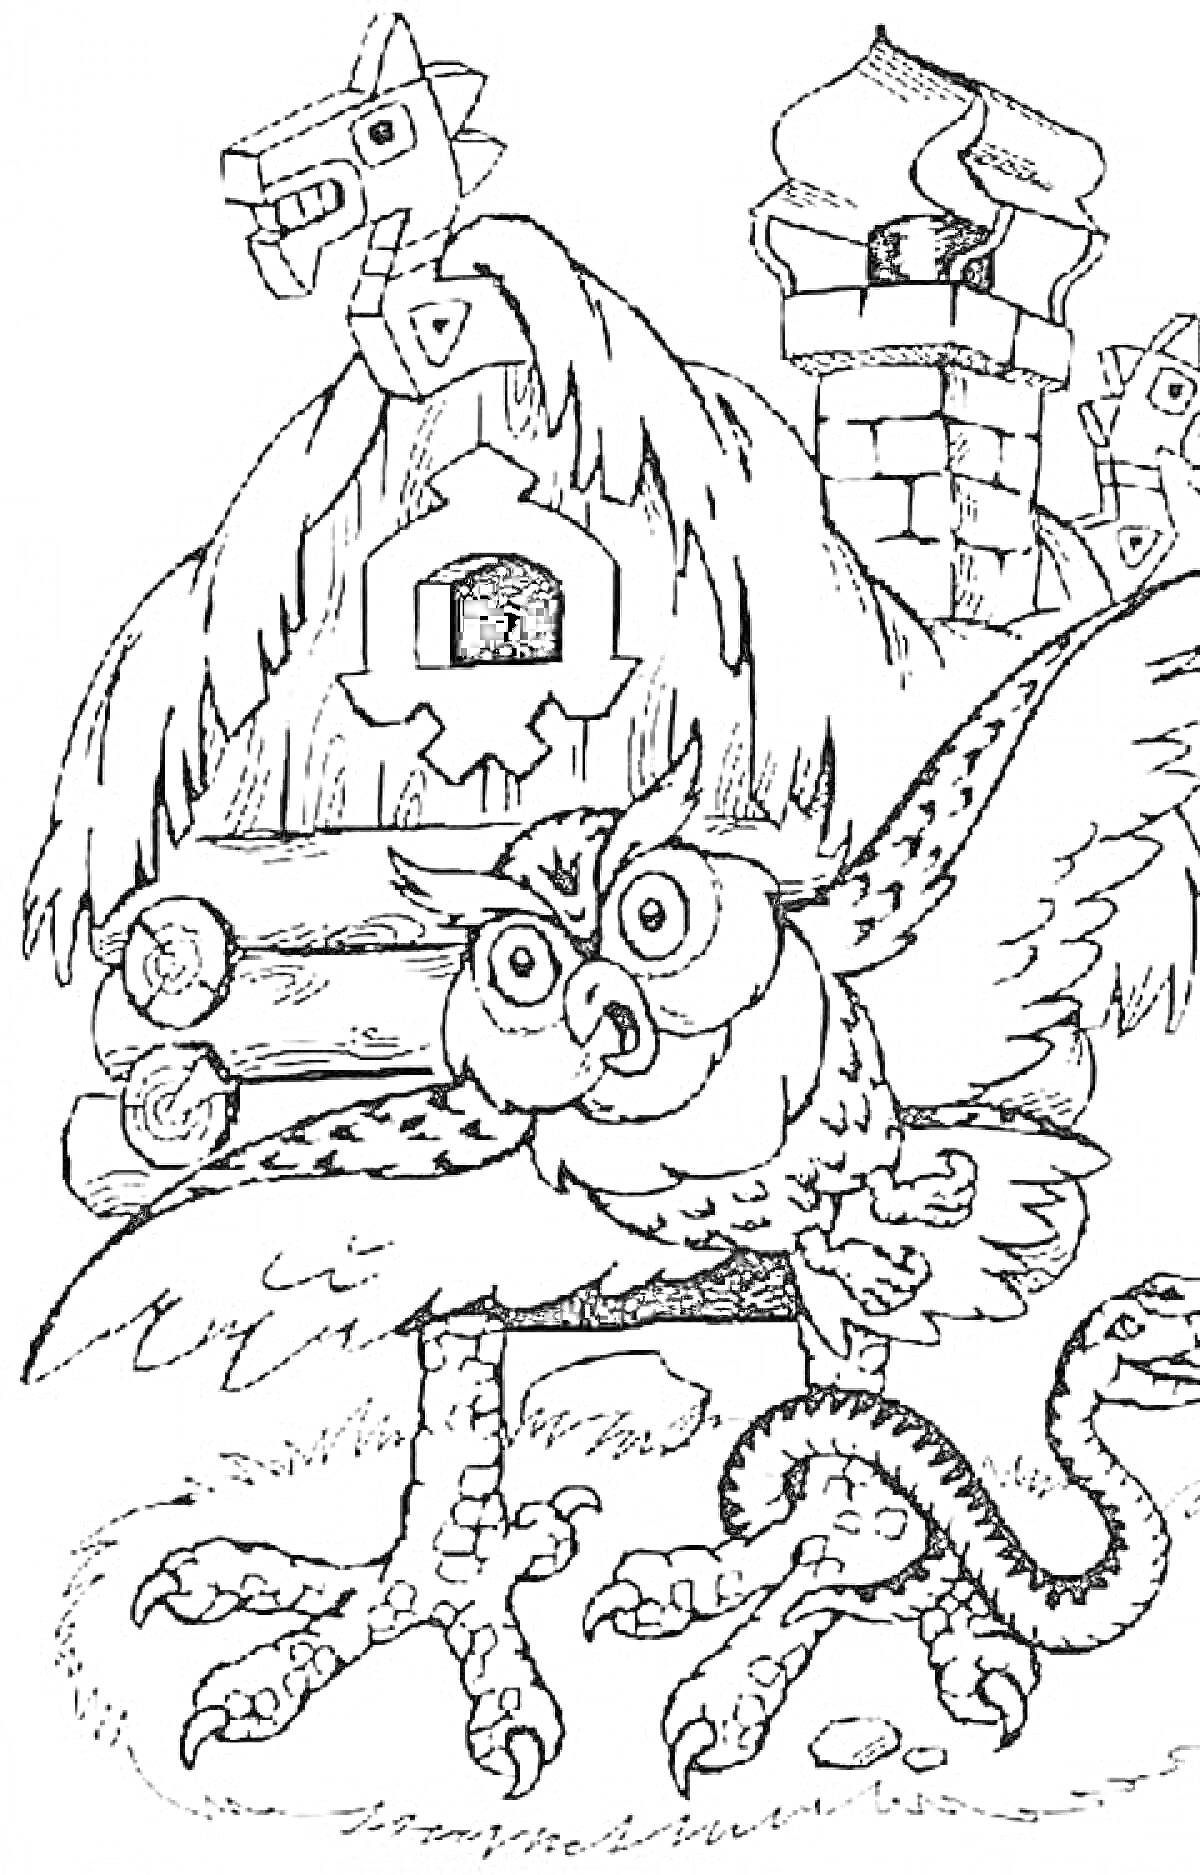 Сова, змея, избушка на курьих ножках, дуб, соломенная крыша, и сказочное окружение